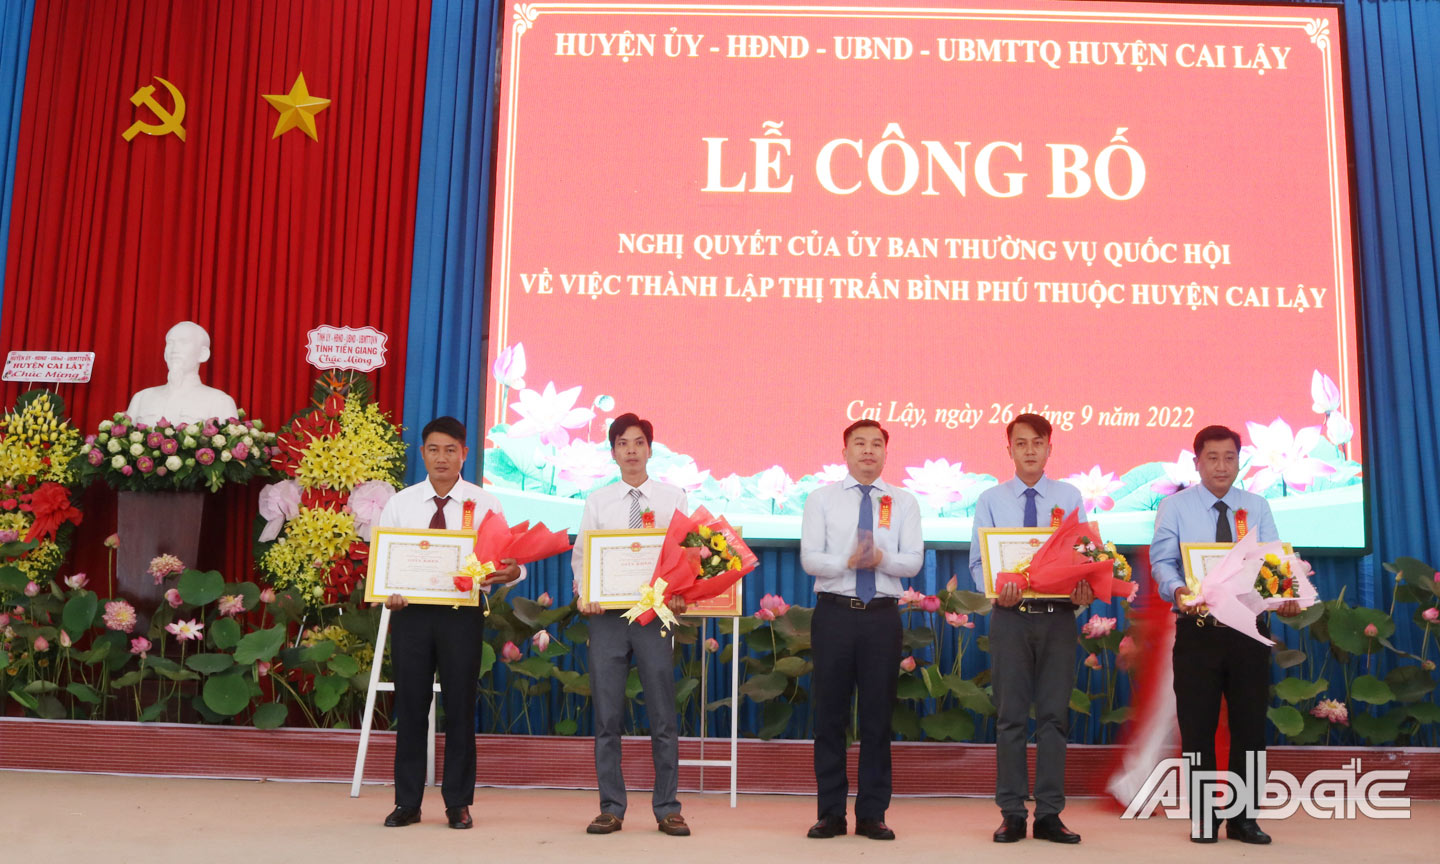 Ông Trần Quốc Bình, Phó Bí thư Huyện ủy, Chủ tịch UBND huyện Cai Lậy trao giấy khen của UBND huyện cho các tập thể và cá nhân có nhiều đóng góp xây dựng thị trấn Bình Phú